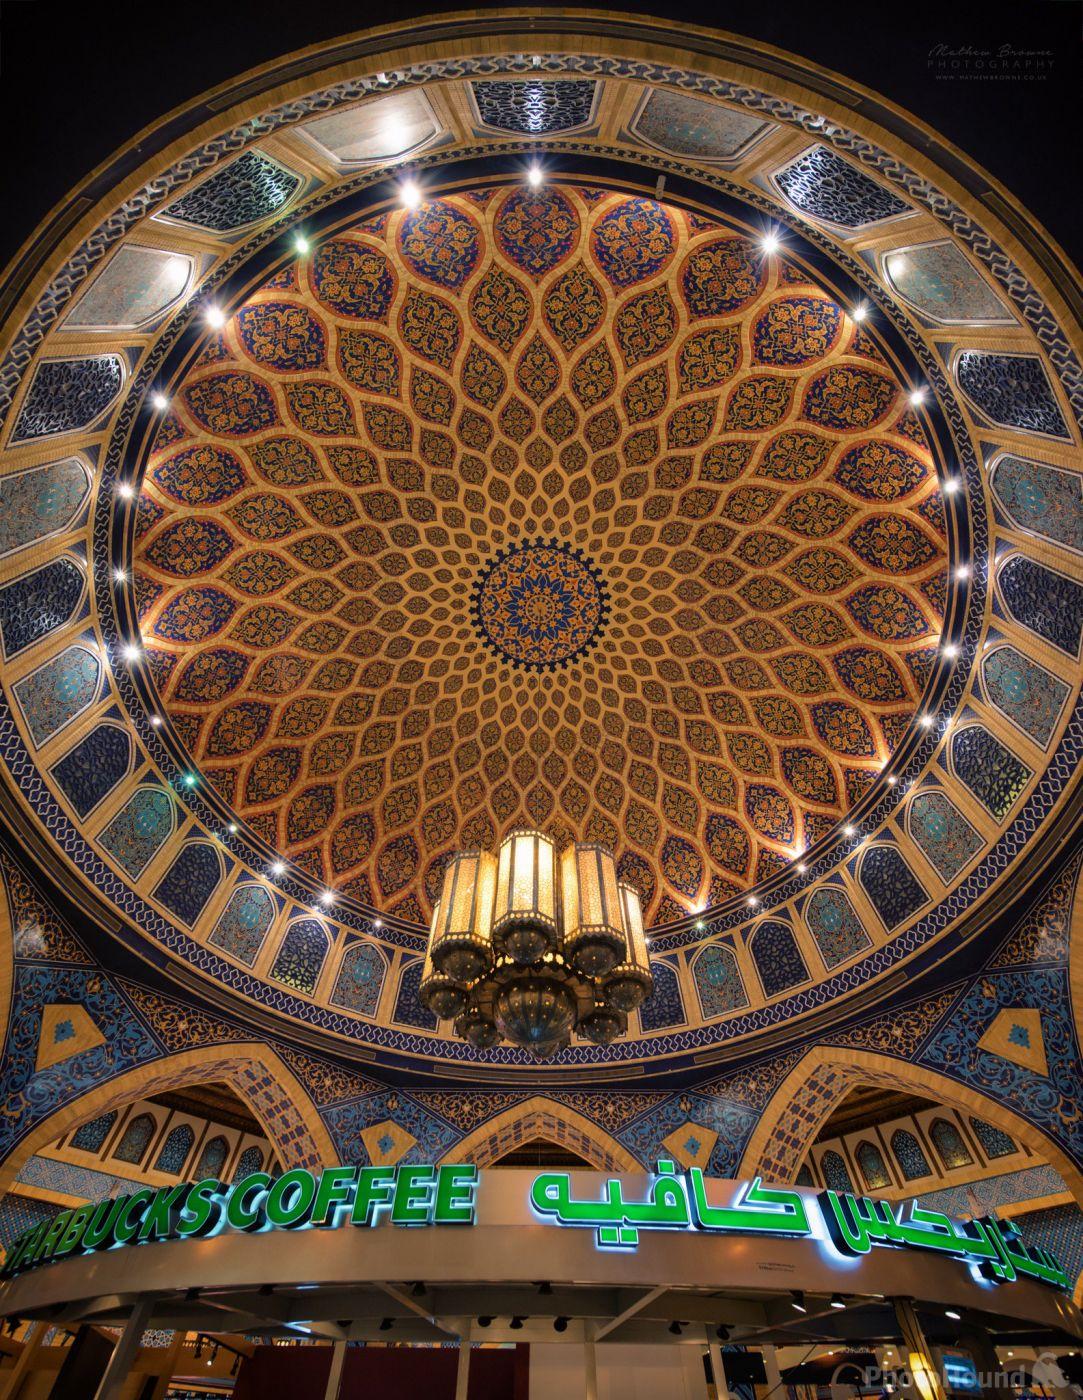 Image of Ibn Battuta Mall by Mathew Browne